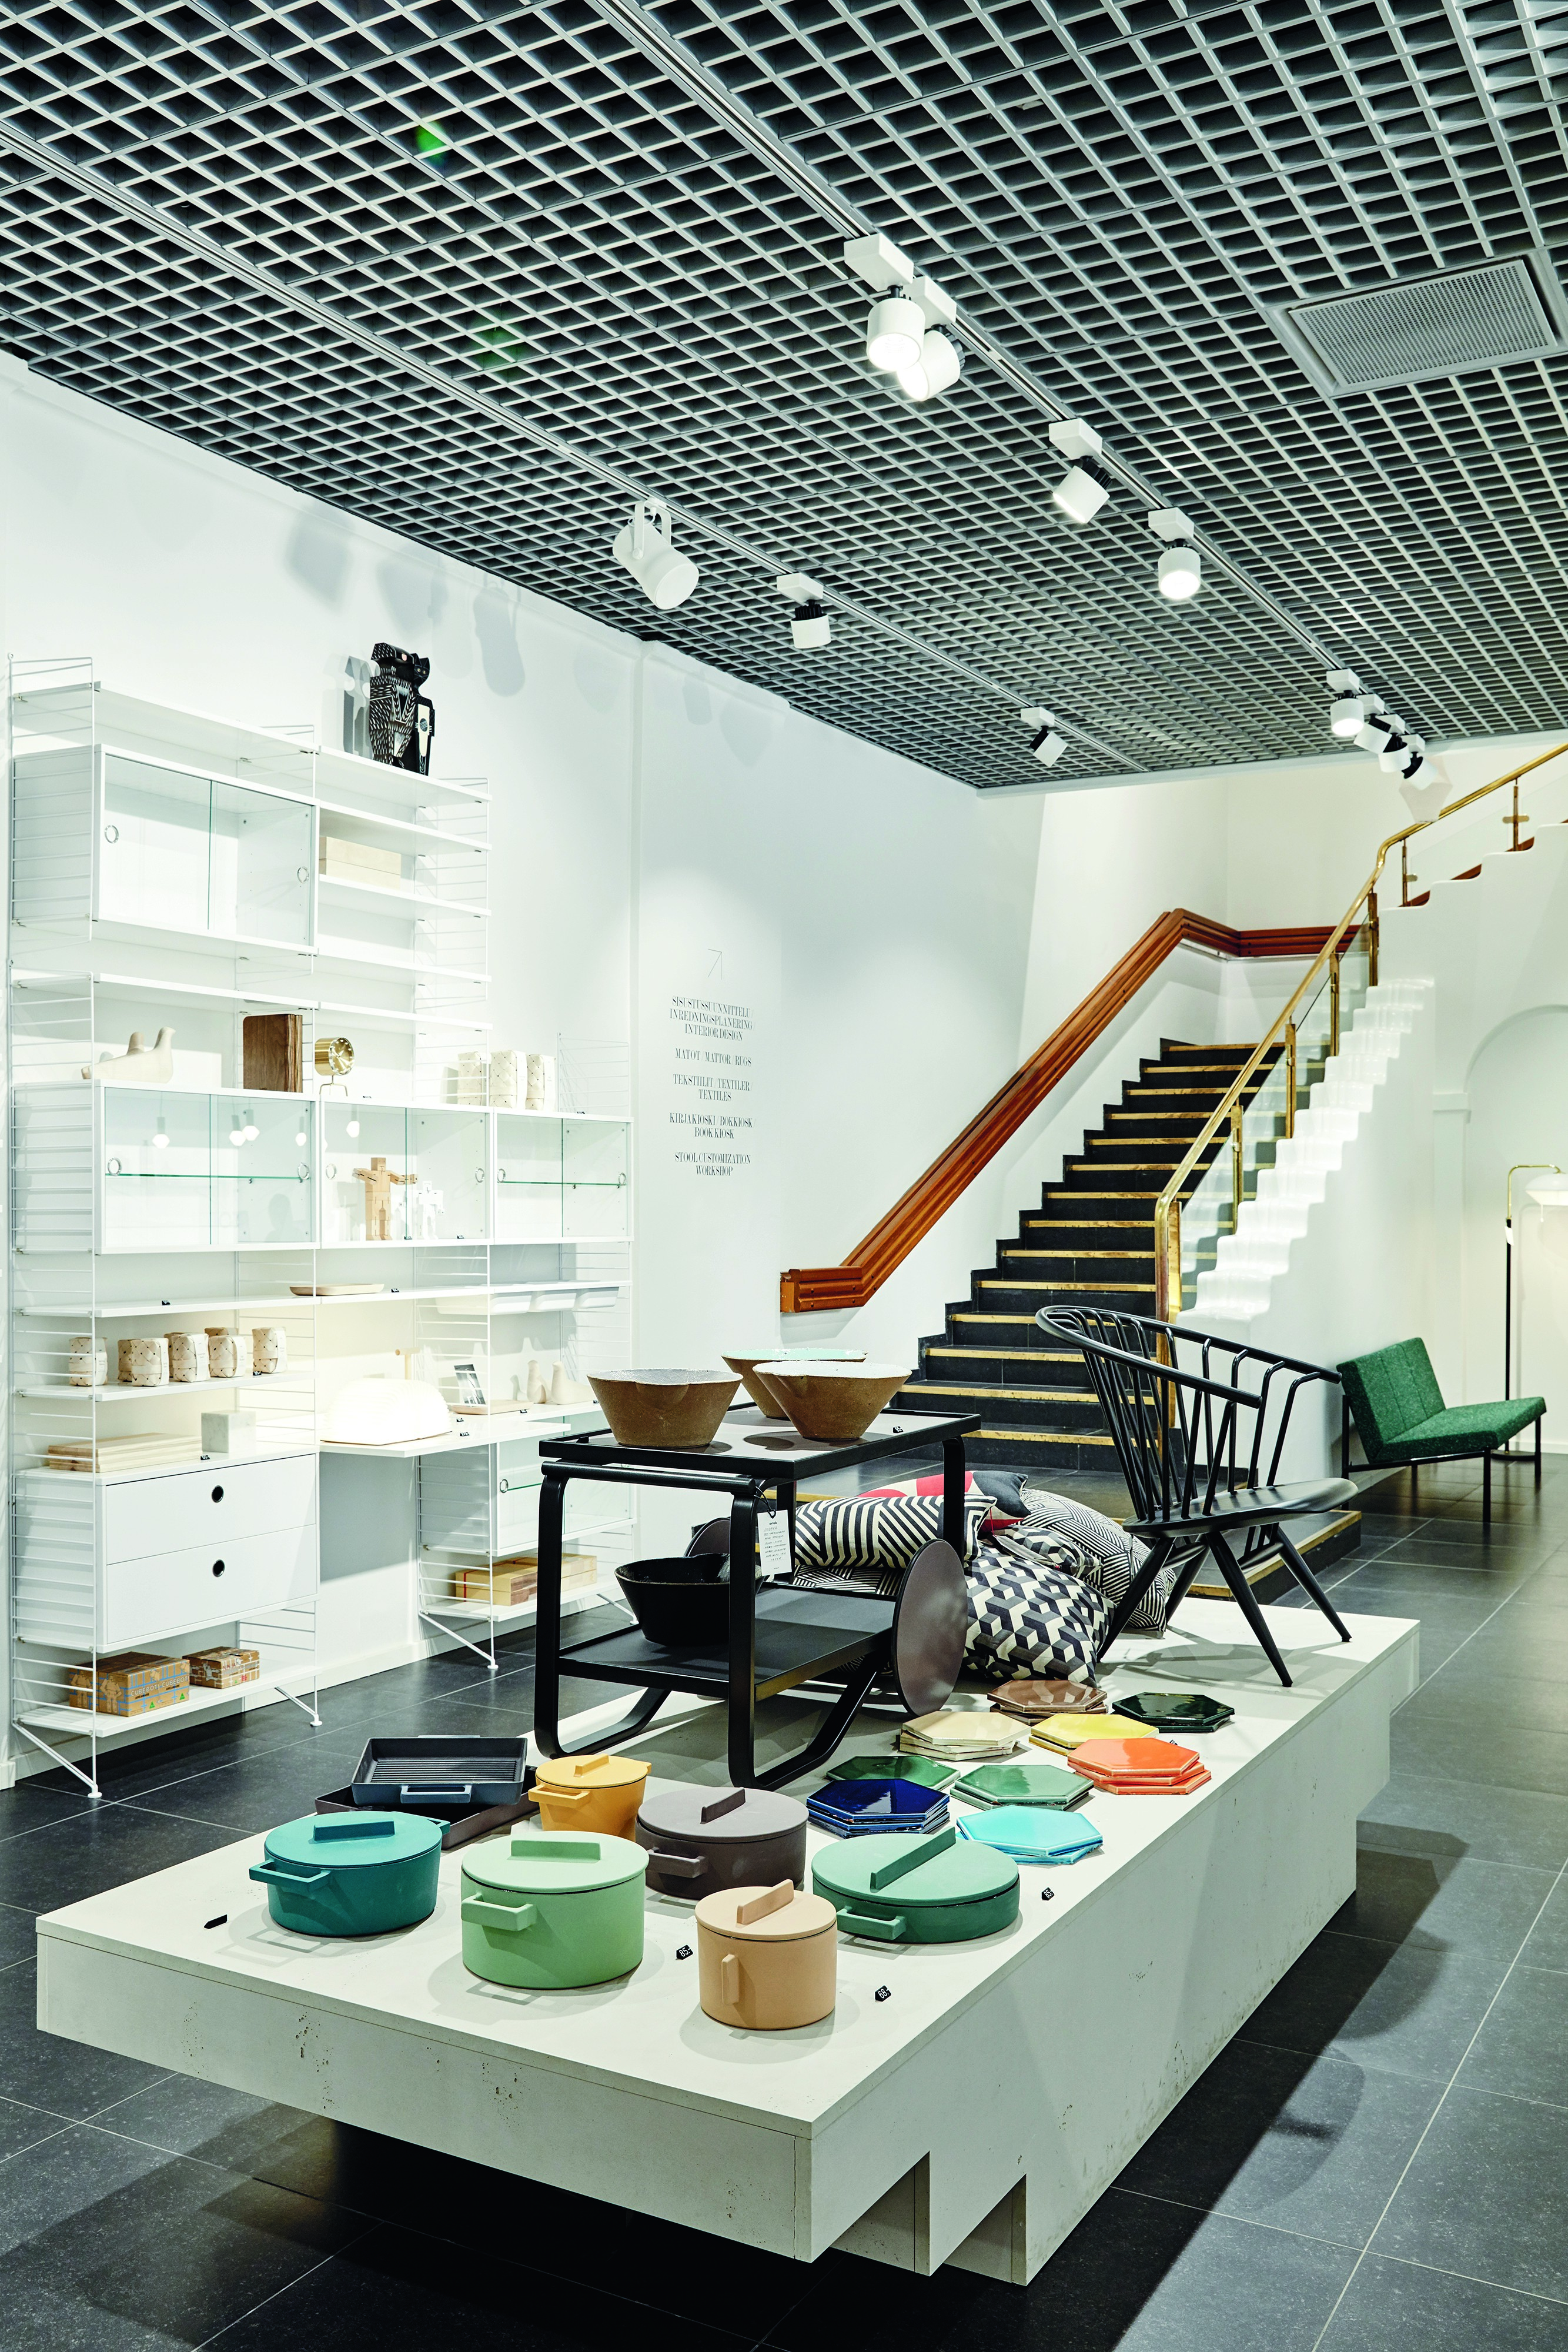 アルテックの製品とフィンランドデザインのクラシック作品が満載の部屋